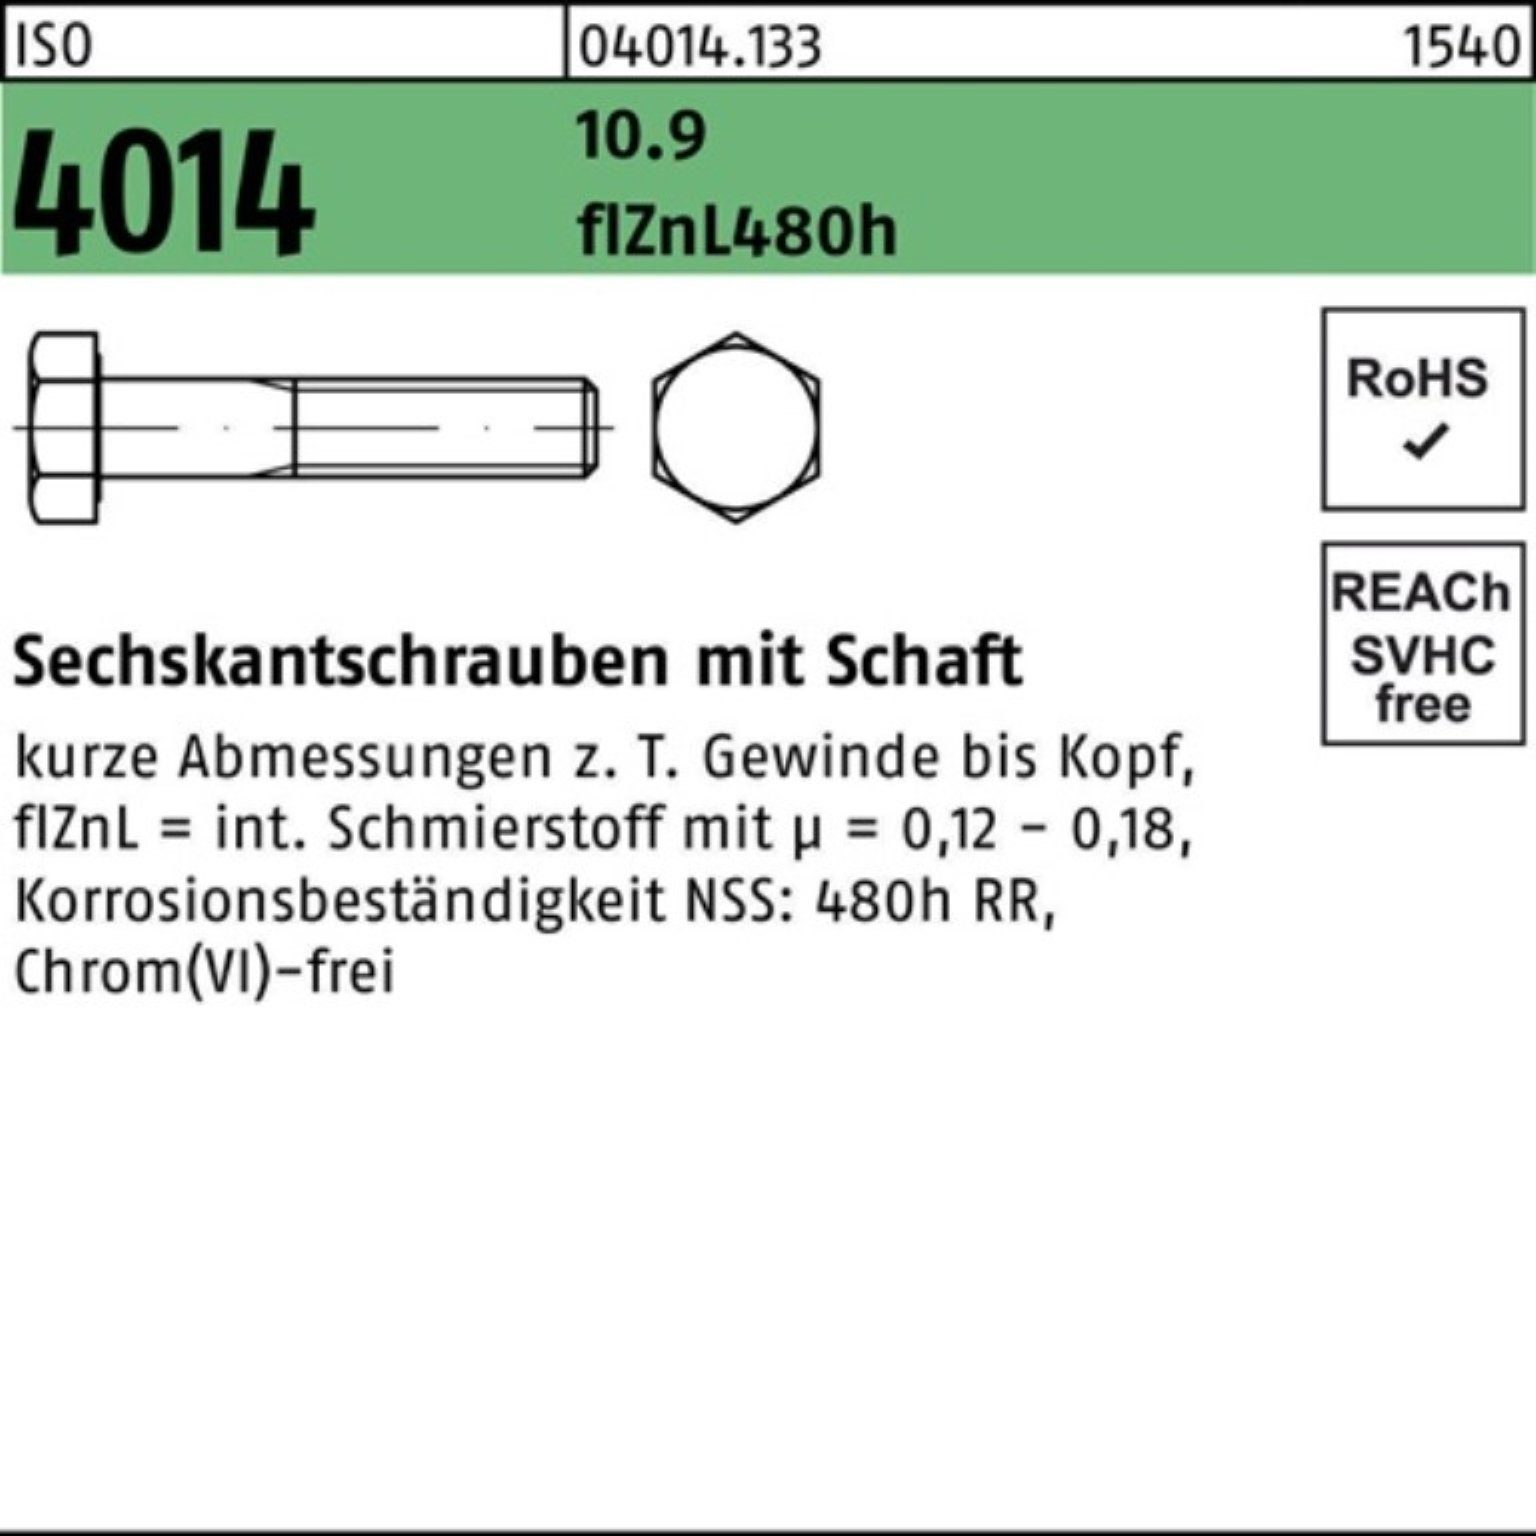 Bufab Sechskantschraube 100er Pack 95 Schaft 4014 Sechskantschraube ISO zinklamellen M16x 10.9